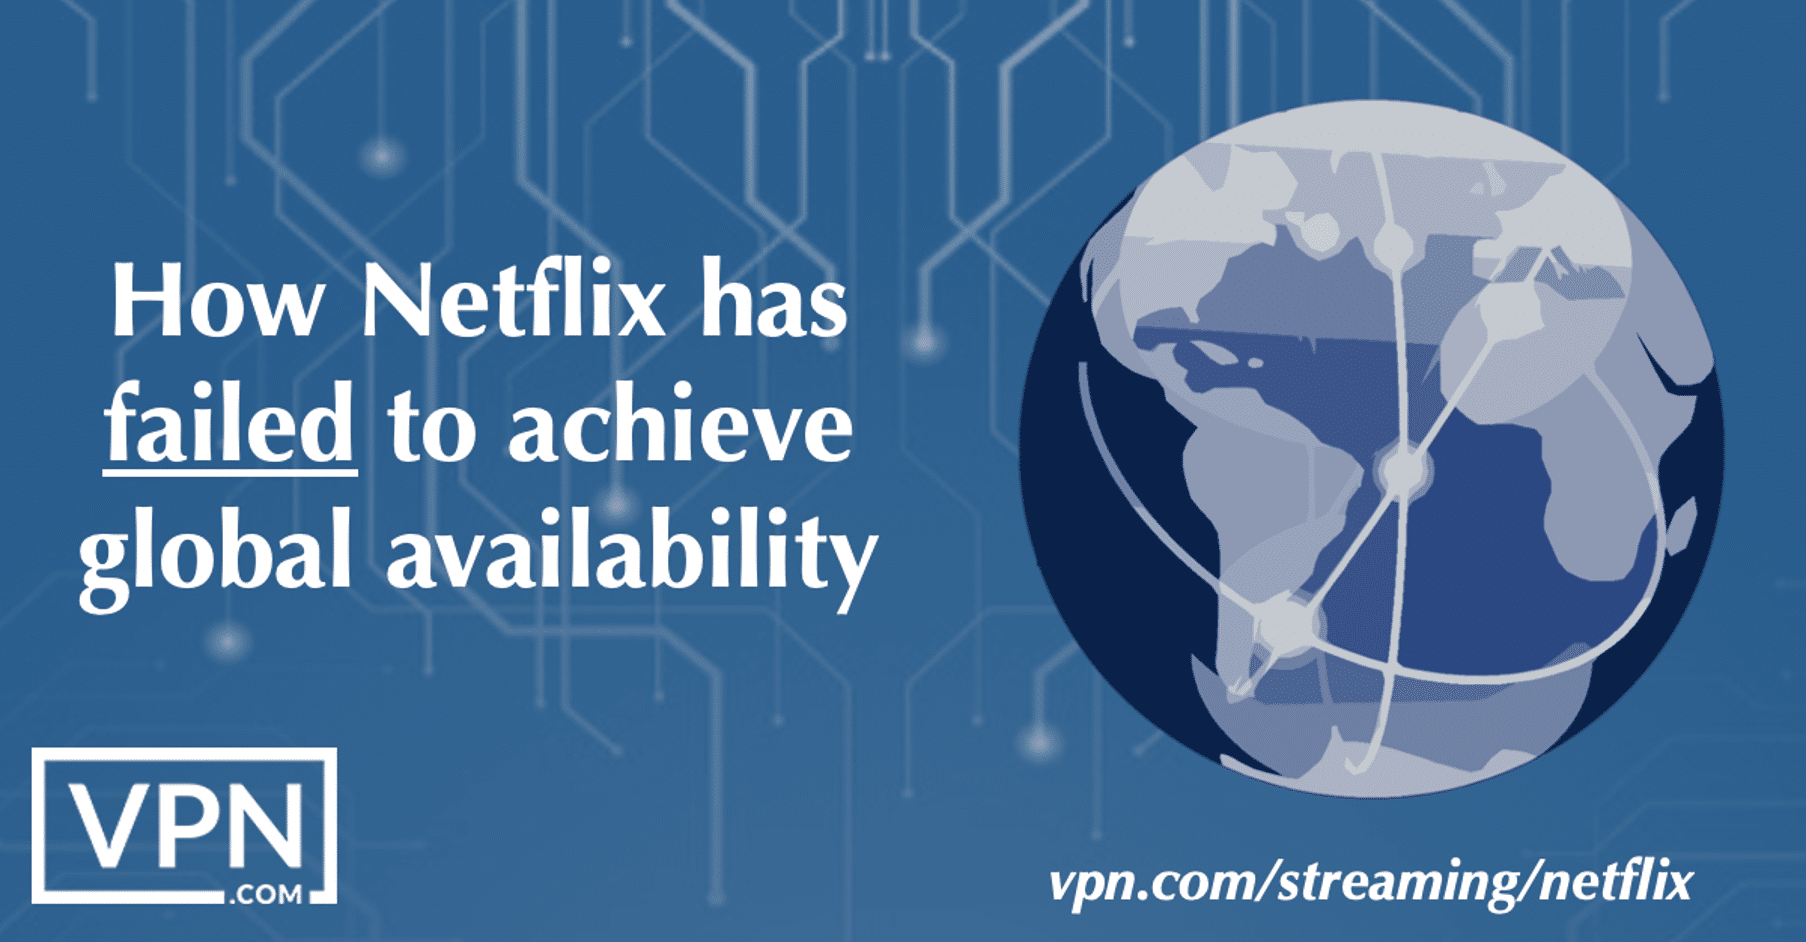 W jaki sposób Netflix nie zdołał osiągnąć globalnej dostępności